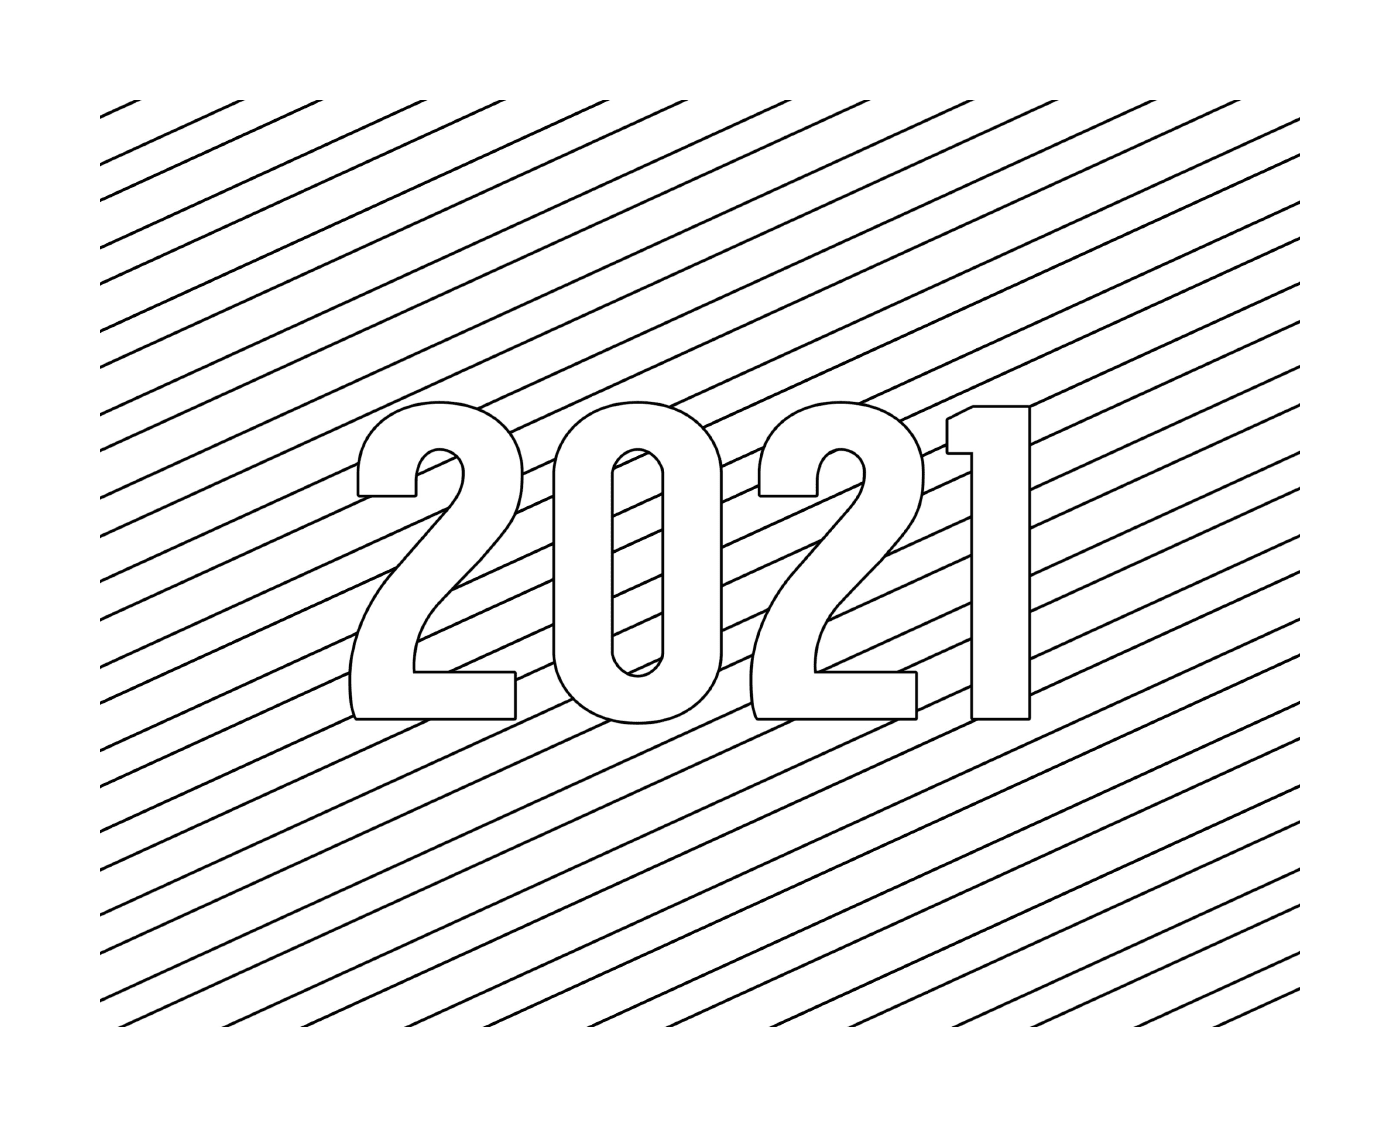   Nouvel an 2021, représenté par les chiffres 2 0 2 1 